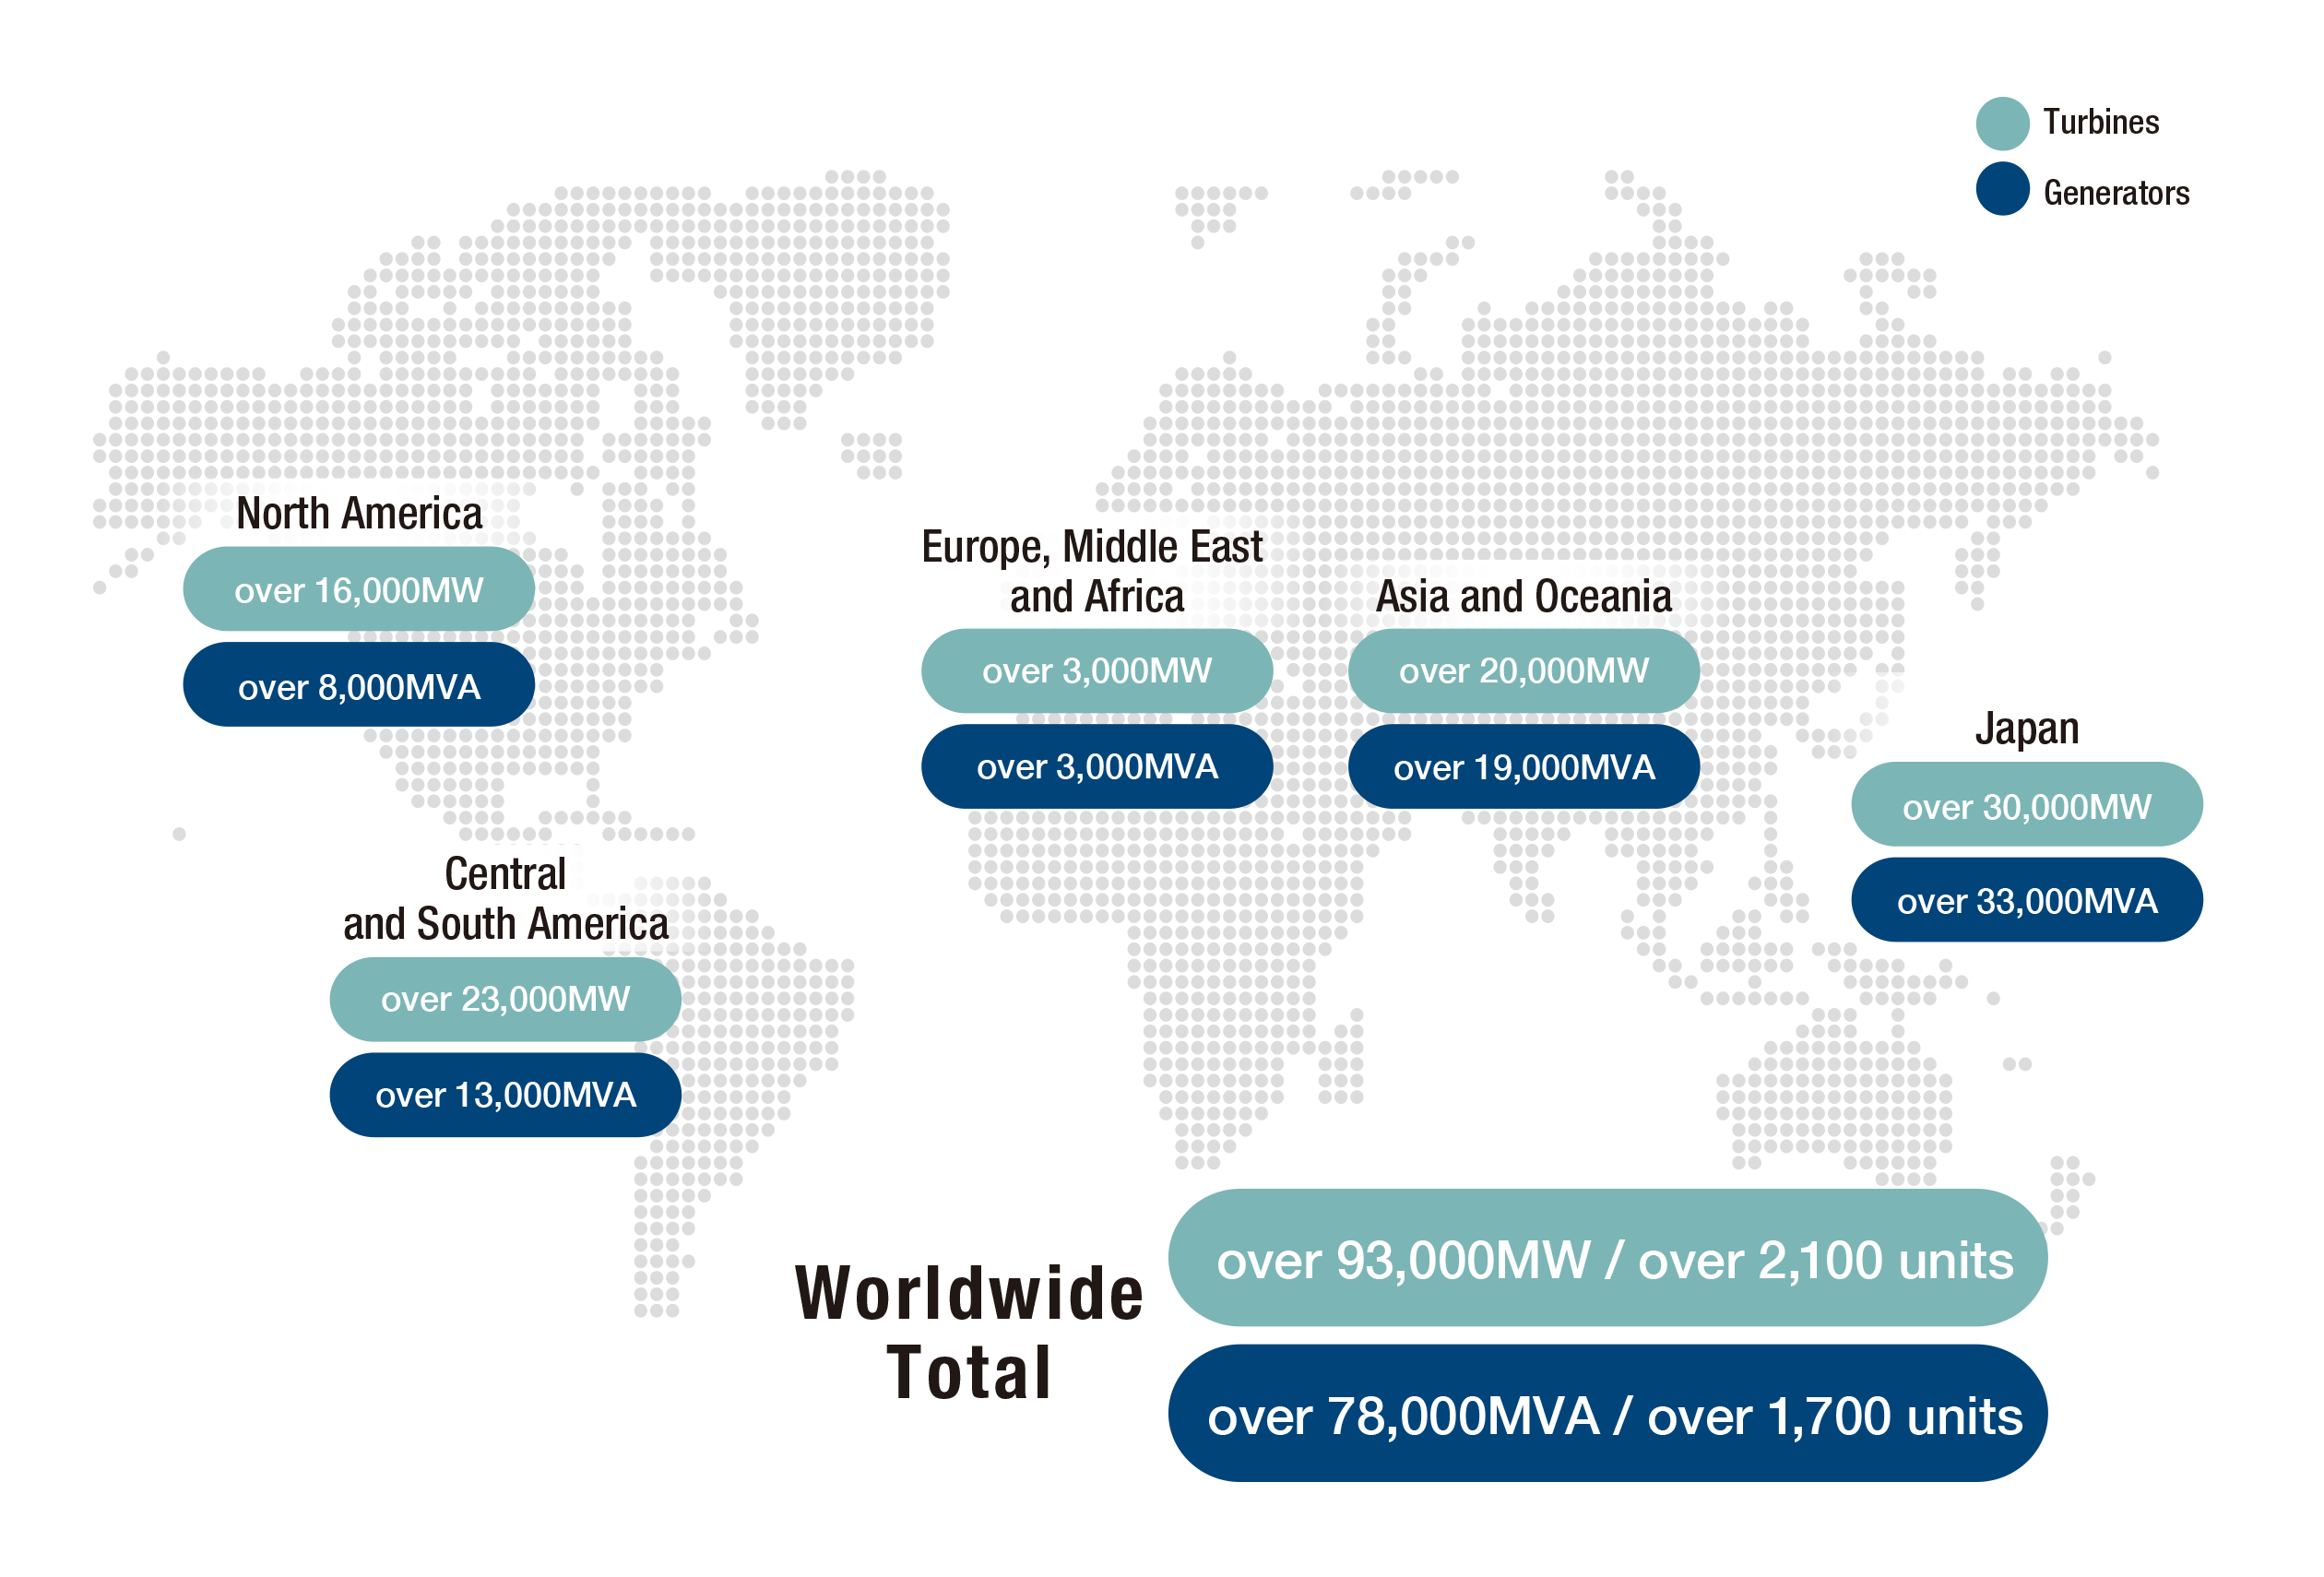 日本の納入実績は、水車 30,000MW 以上、発電機33,000MVA以上。北米の納入実績は、水車16,000MW 以上、発電機8,000MVA以上。中南米の納入実績は、水車23,000MW 以上、発電機 13,000MVA以上。欧州・中東・アフリカの納入実績は、水車3,000MW 以上、発電機3,000MVA以上。アジア・オセアニアの納入実績は、水車20,000MW 以上、発電機 19,000MVA以上。全世界合計納入実績は、水車93,000MW以上/2,100台以上。発電機78,000MVA以上/1,700台以上。